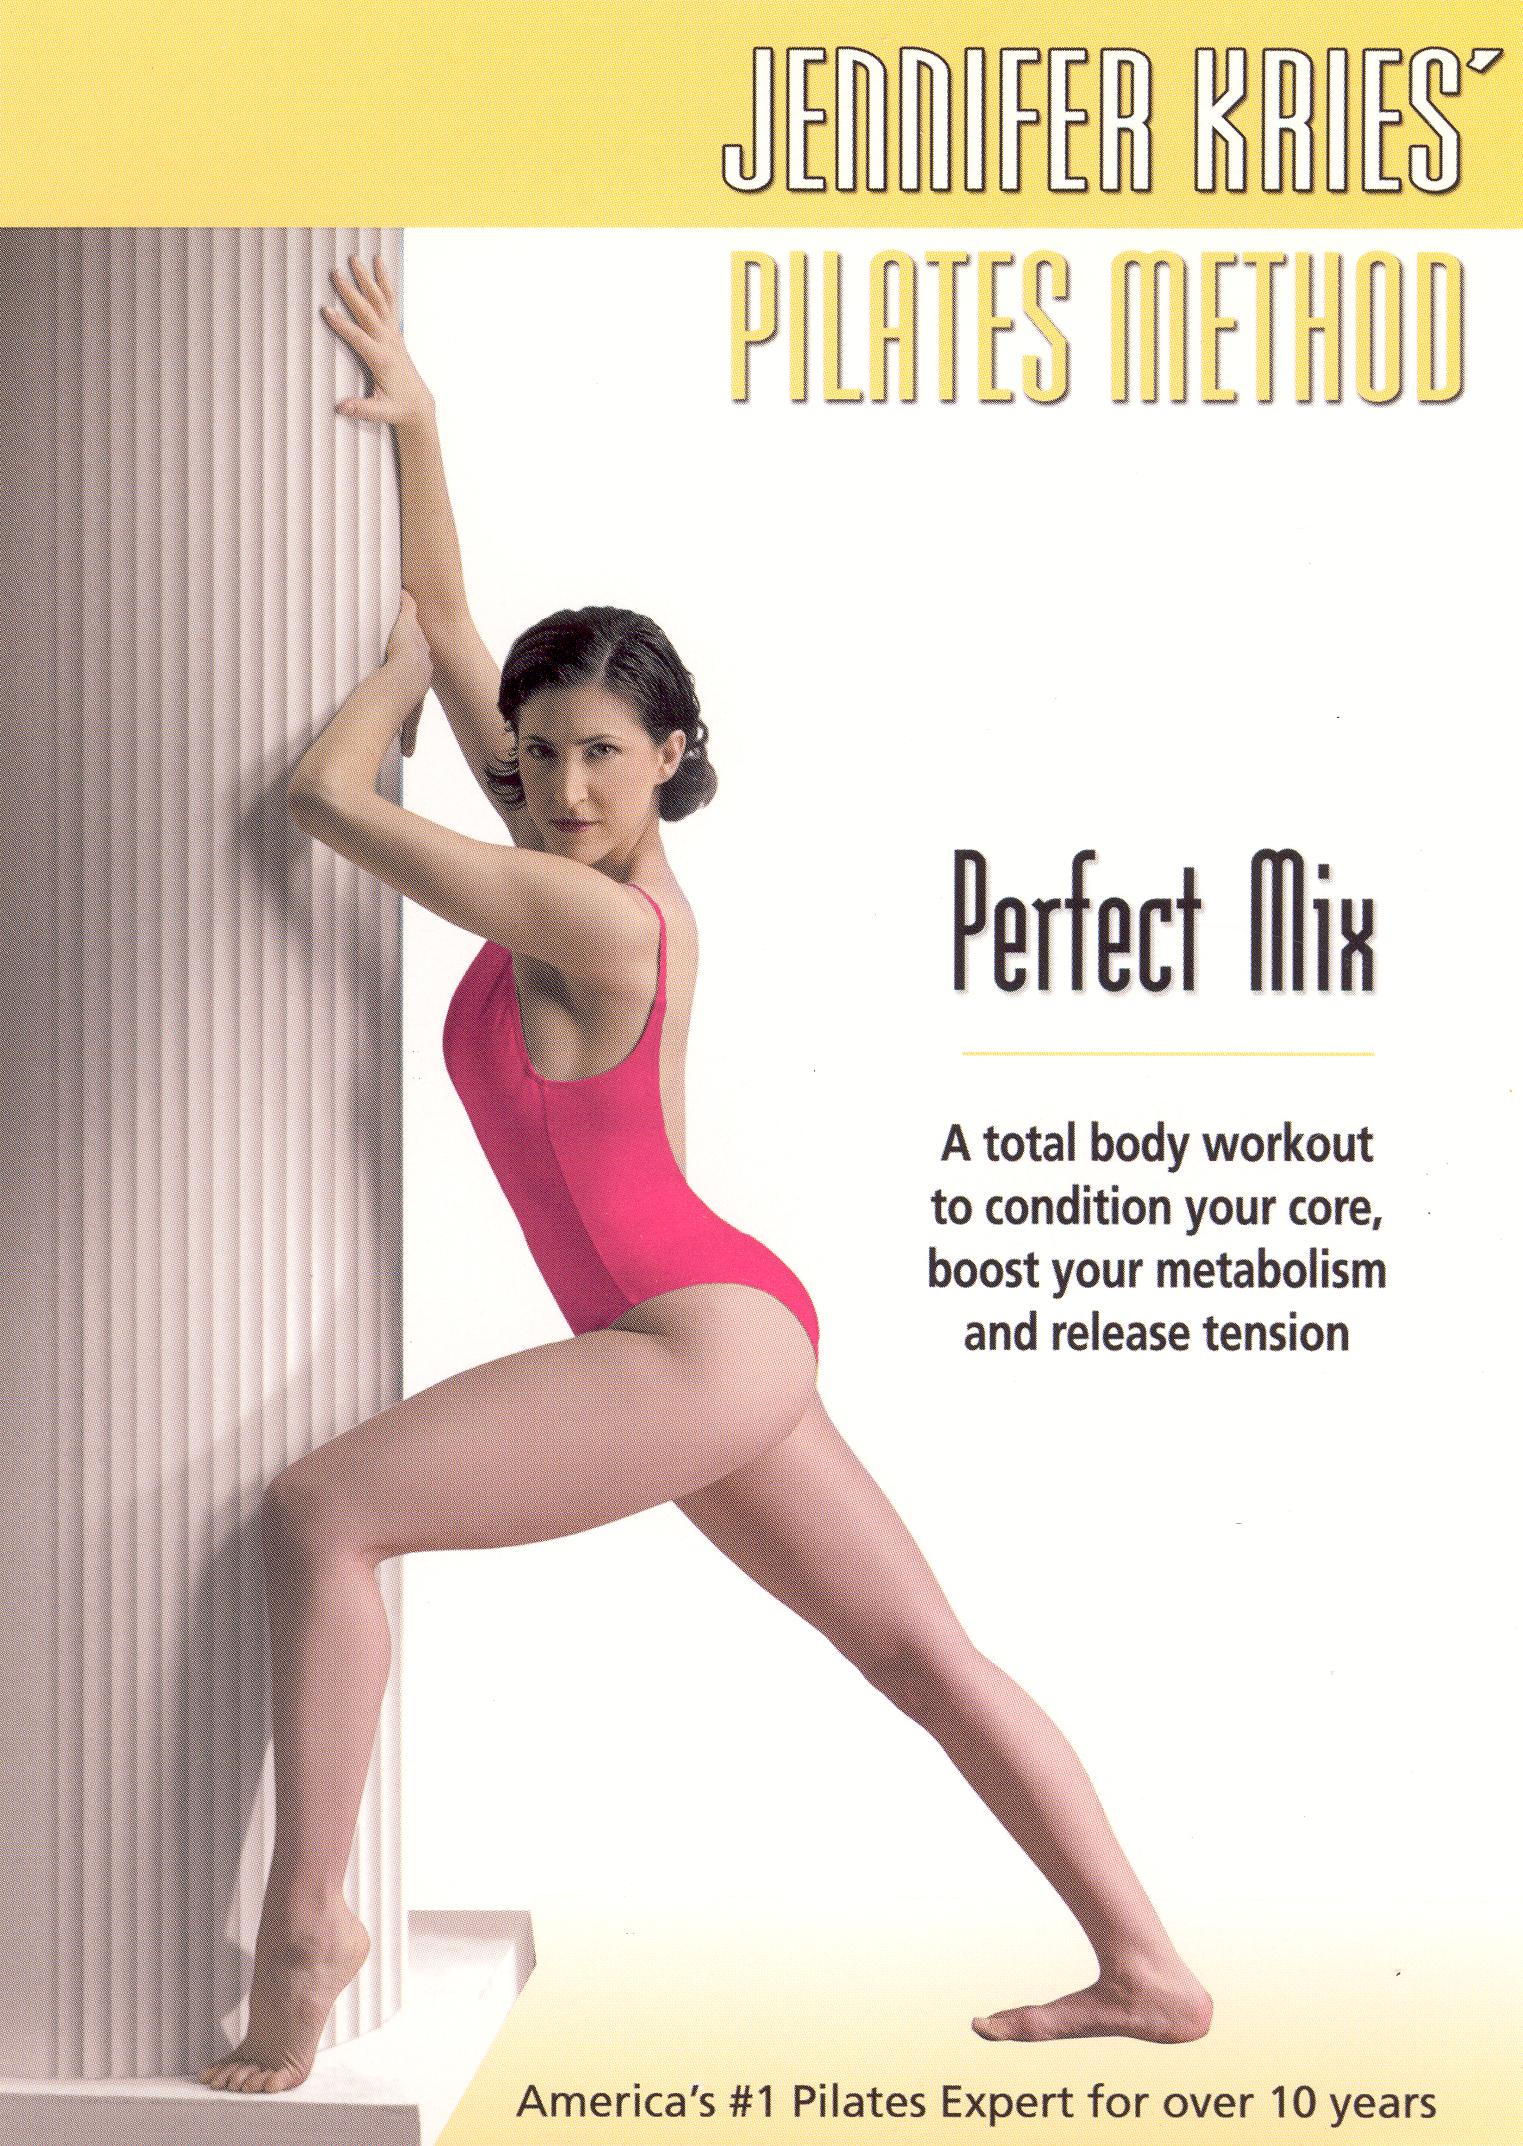 New Body Pilates Beginner Mat Workout Video on DVD - Jennifer